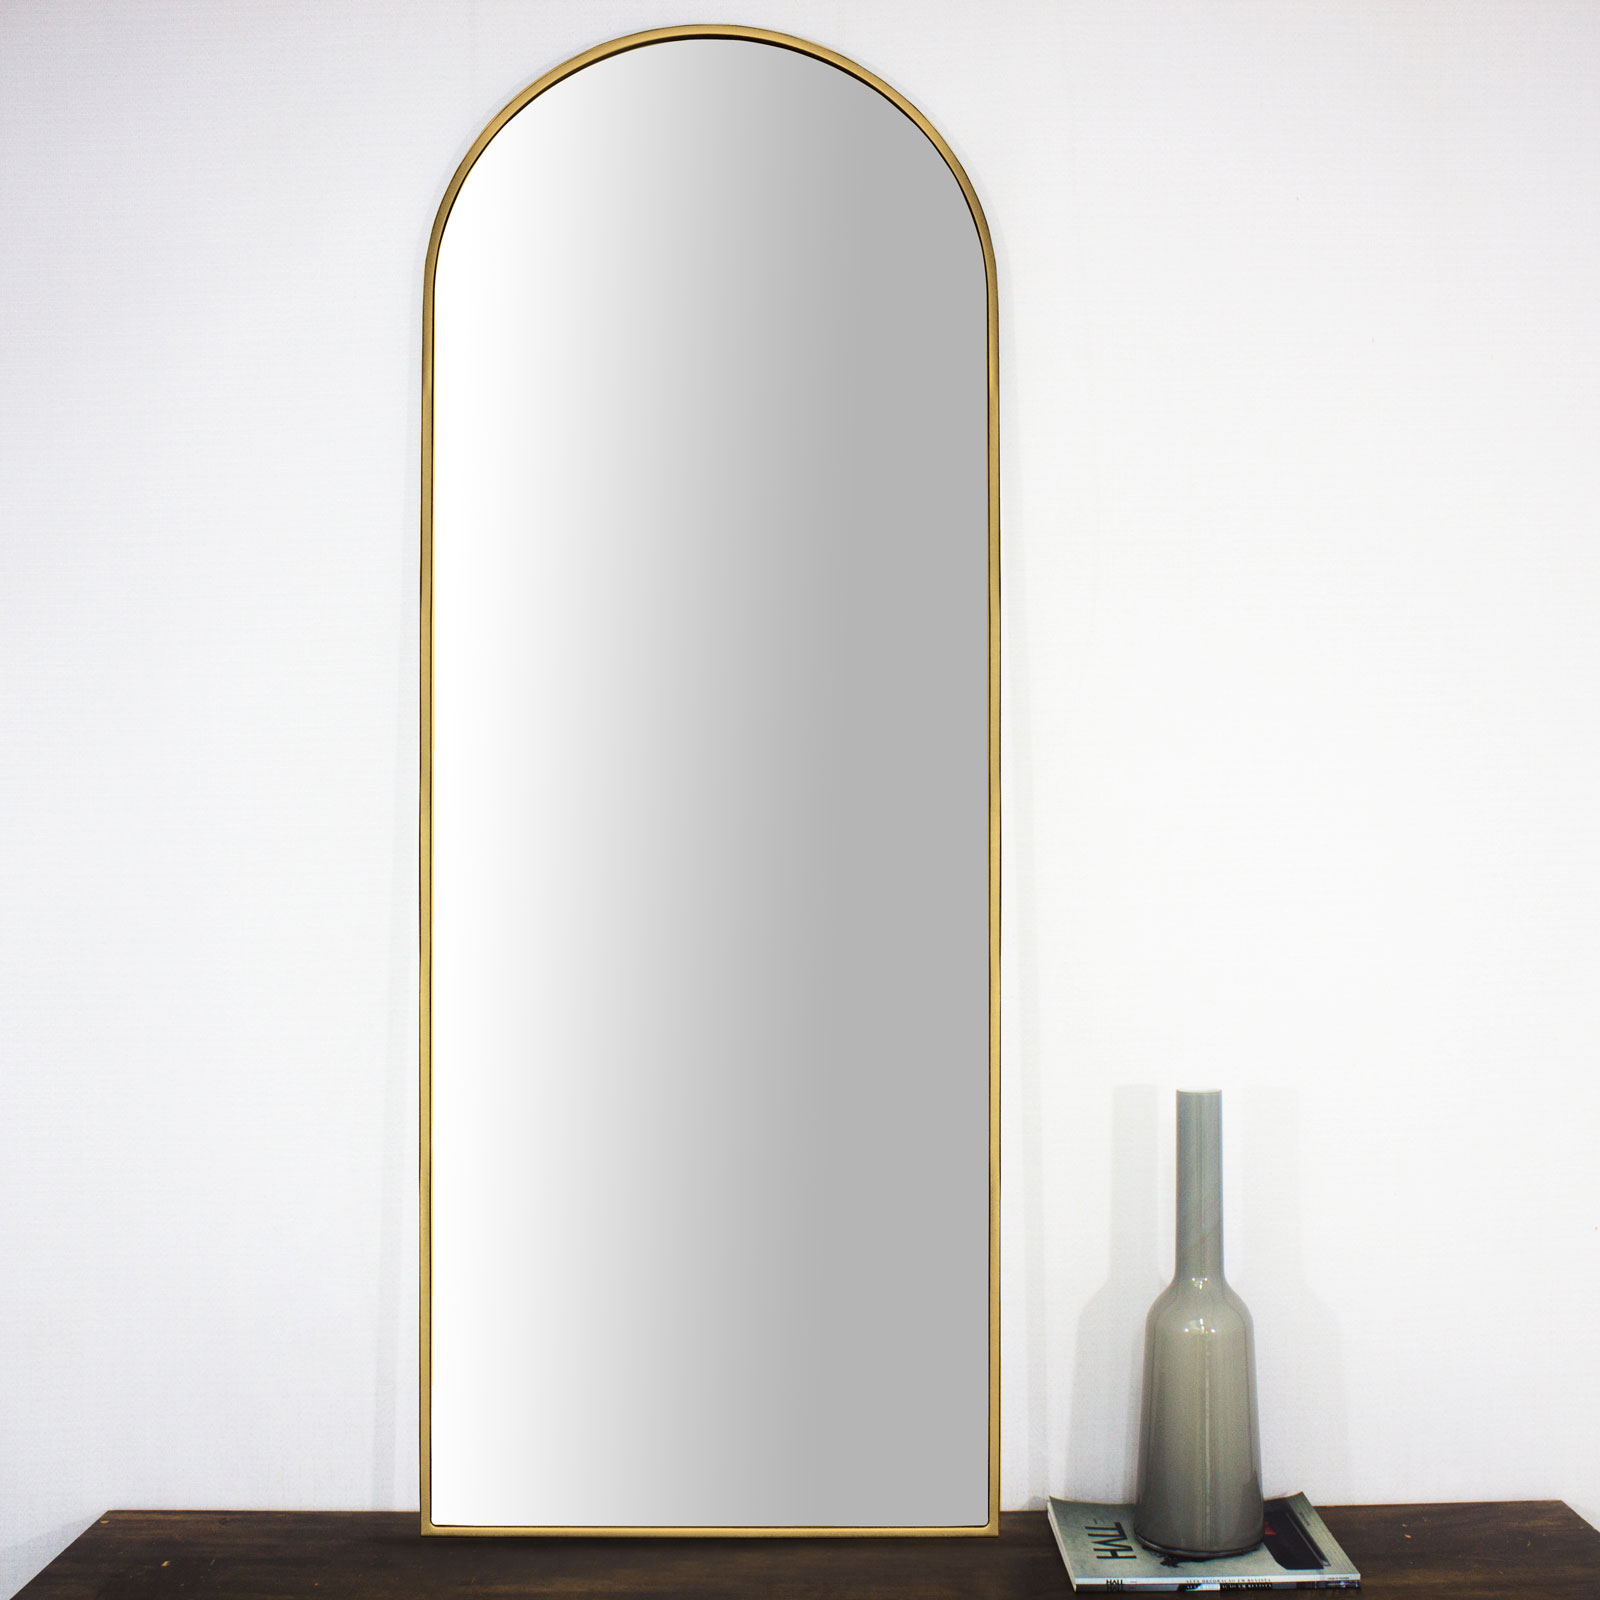 Moldura Semi Oval Janela Mdf Laqueada Dourada Brilho para Espelhos V�rias Medidas